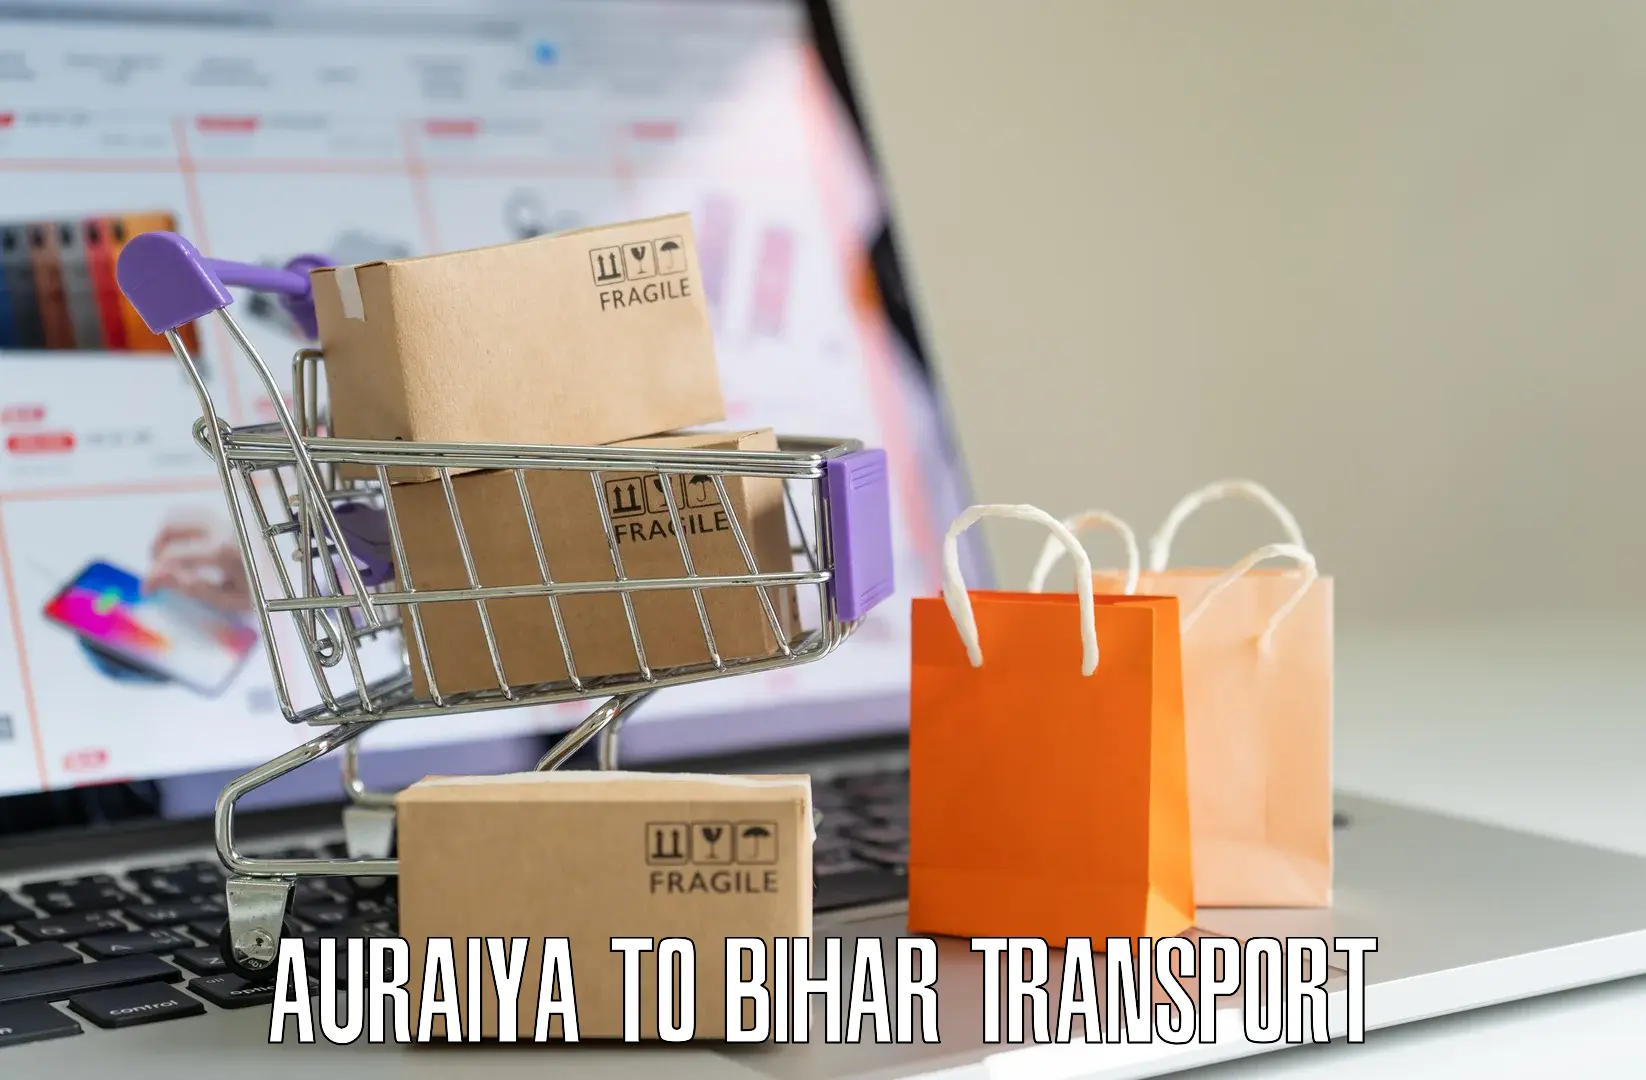 Daily parcel service transport Auraiya to Bahadurganj